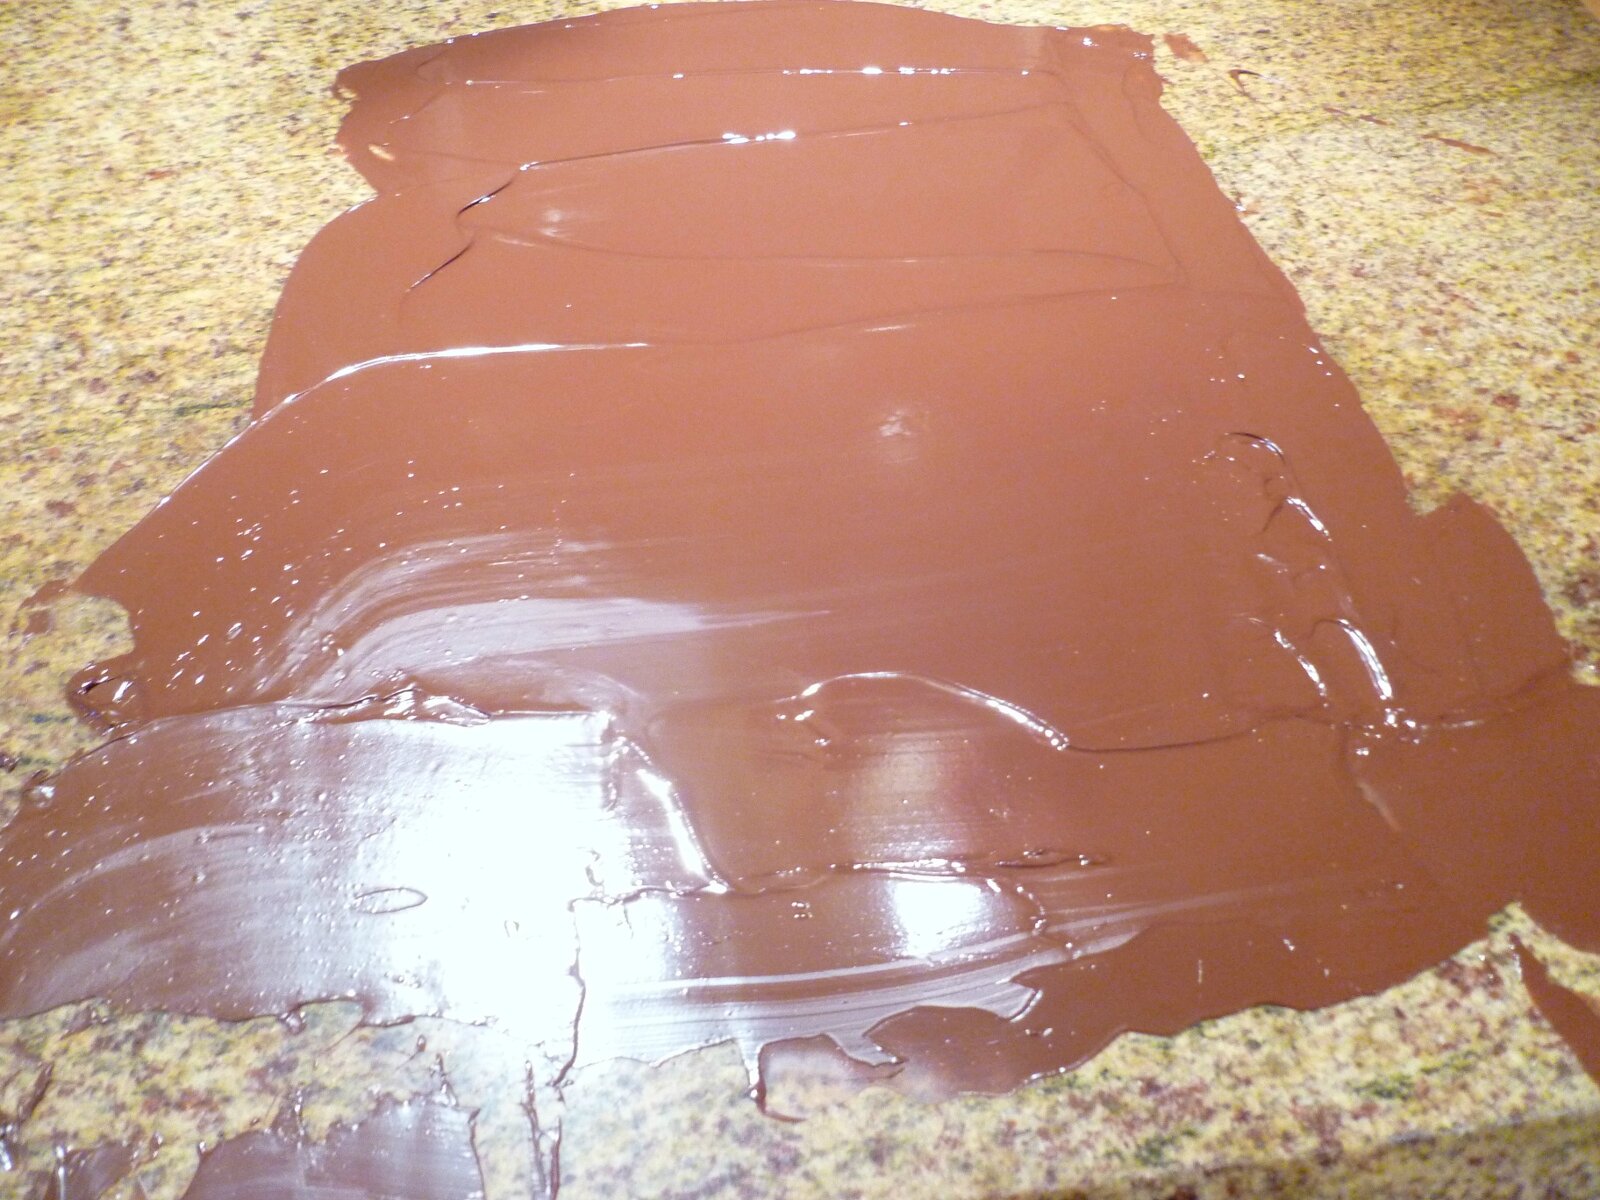 Comment réaliser des copeaux de chocolat ?